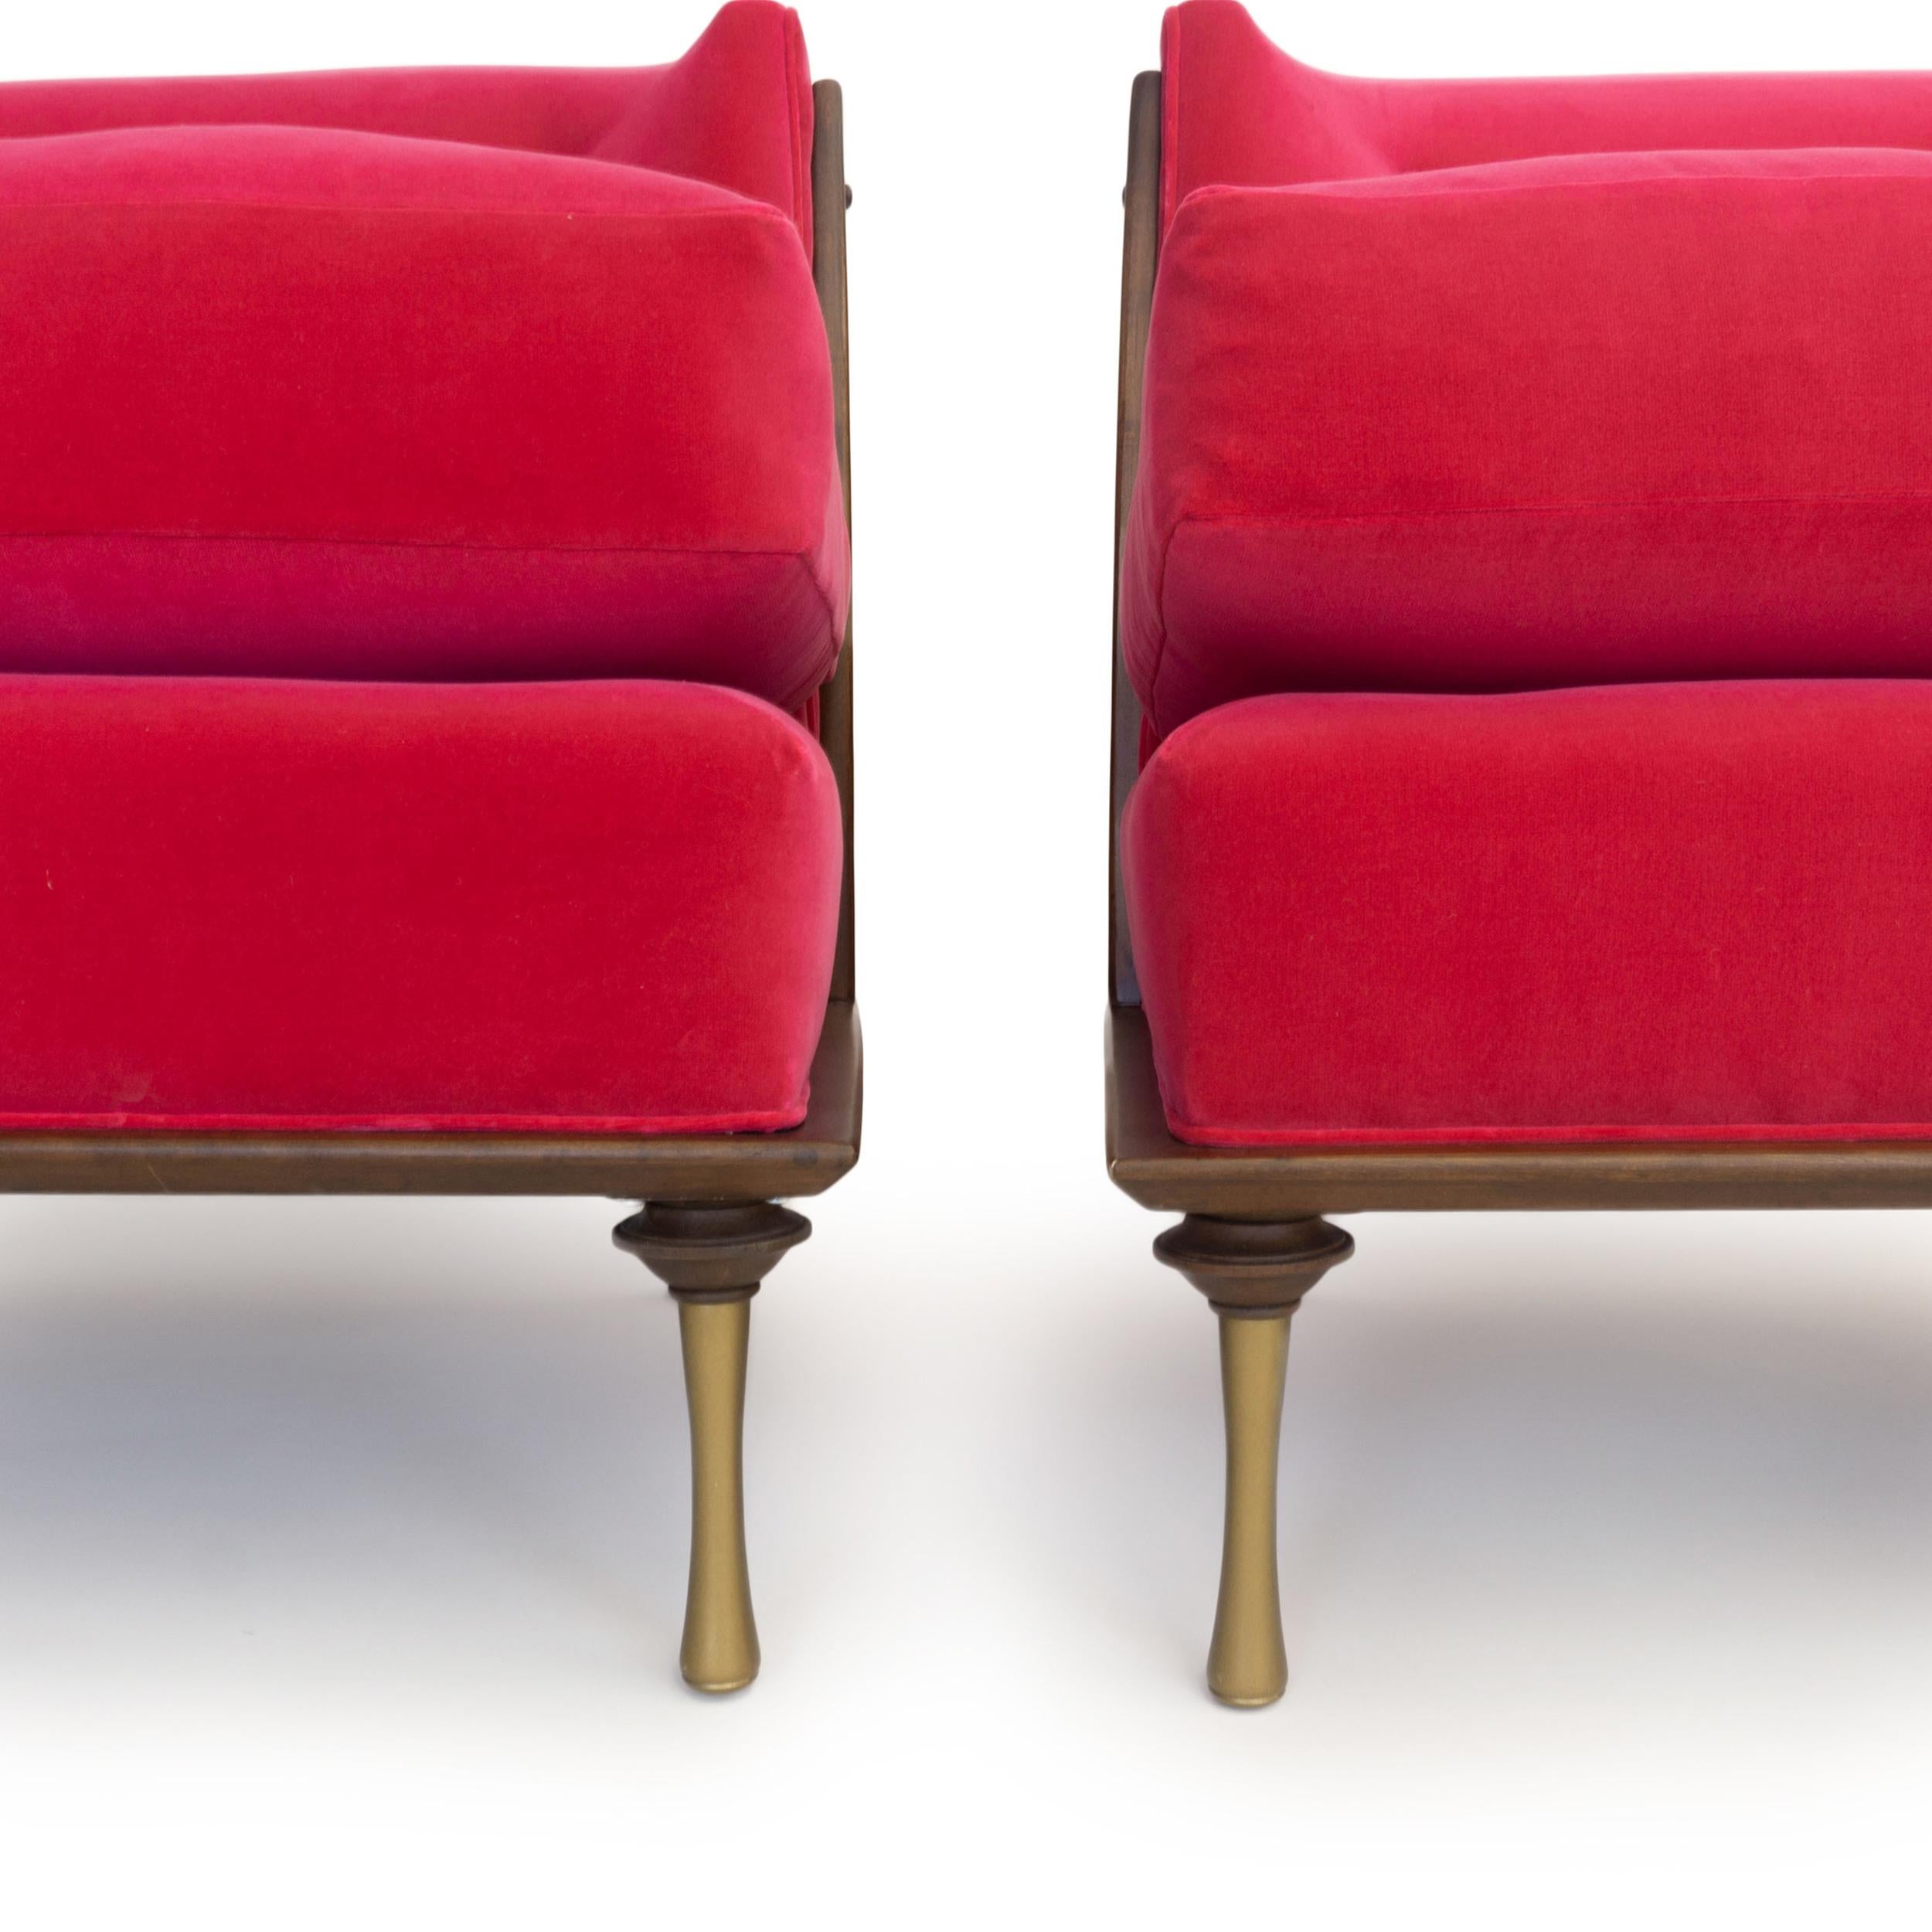 Art Deco Inspired Slipper Chair For Sale 6